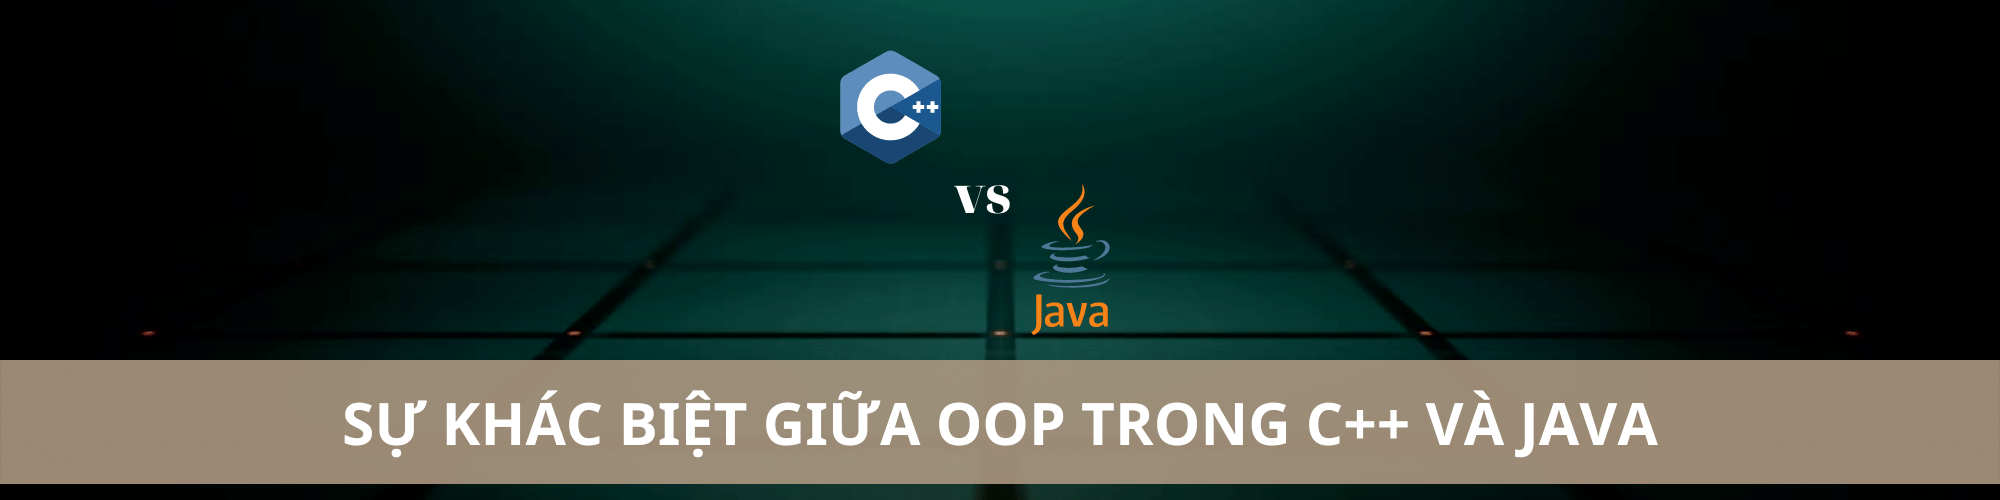 Tìm hiểu sự khác biệt giữa OOP trong C++ và Java